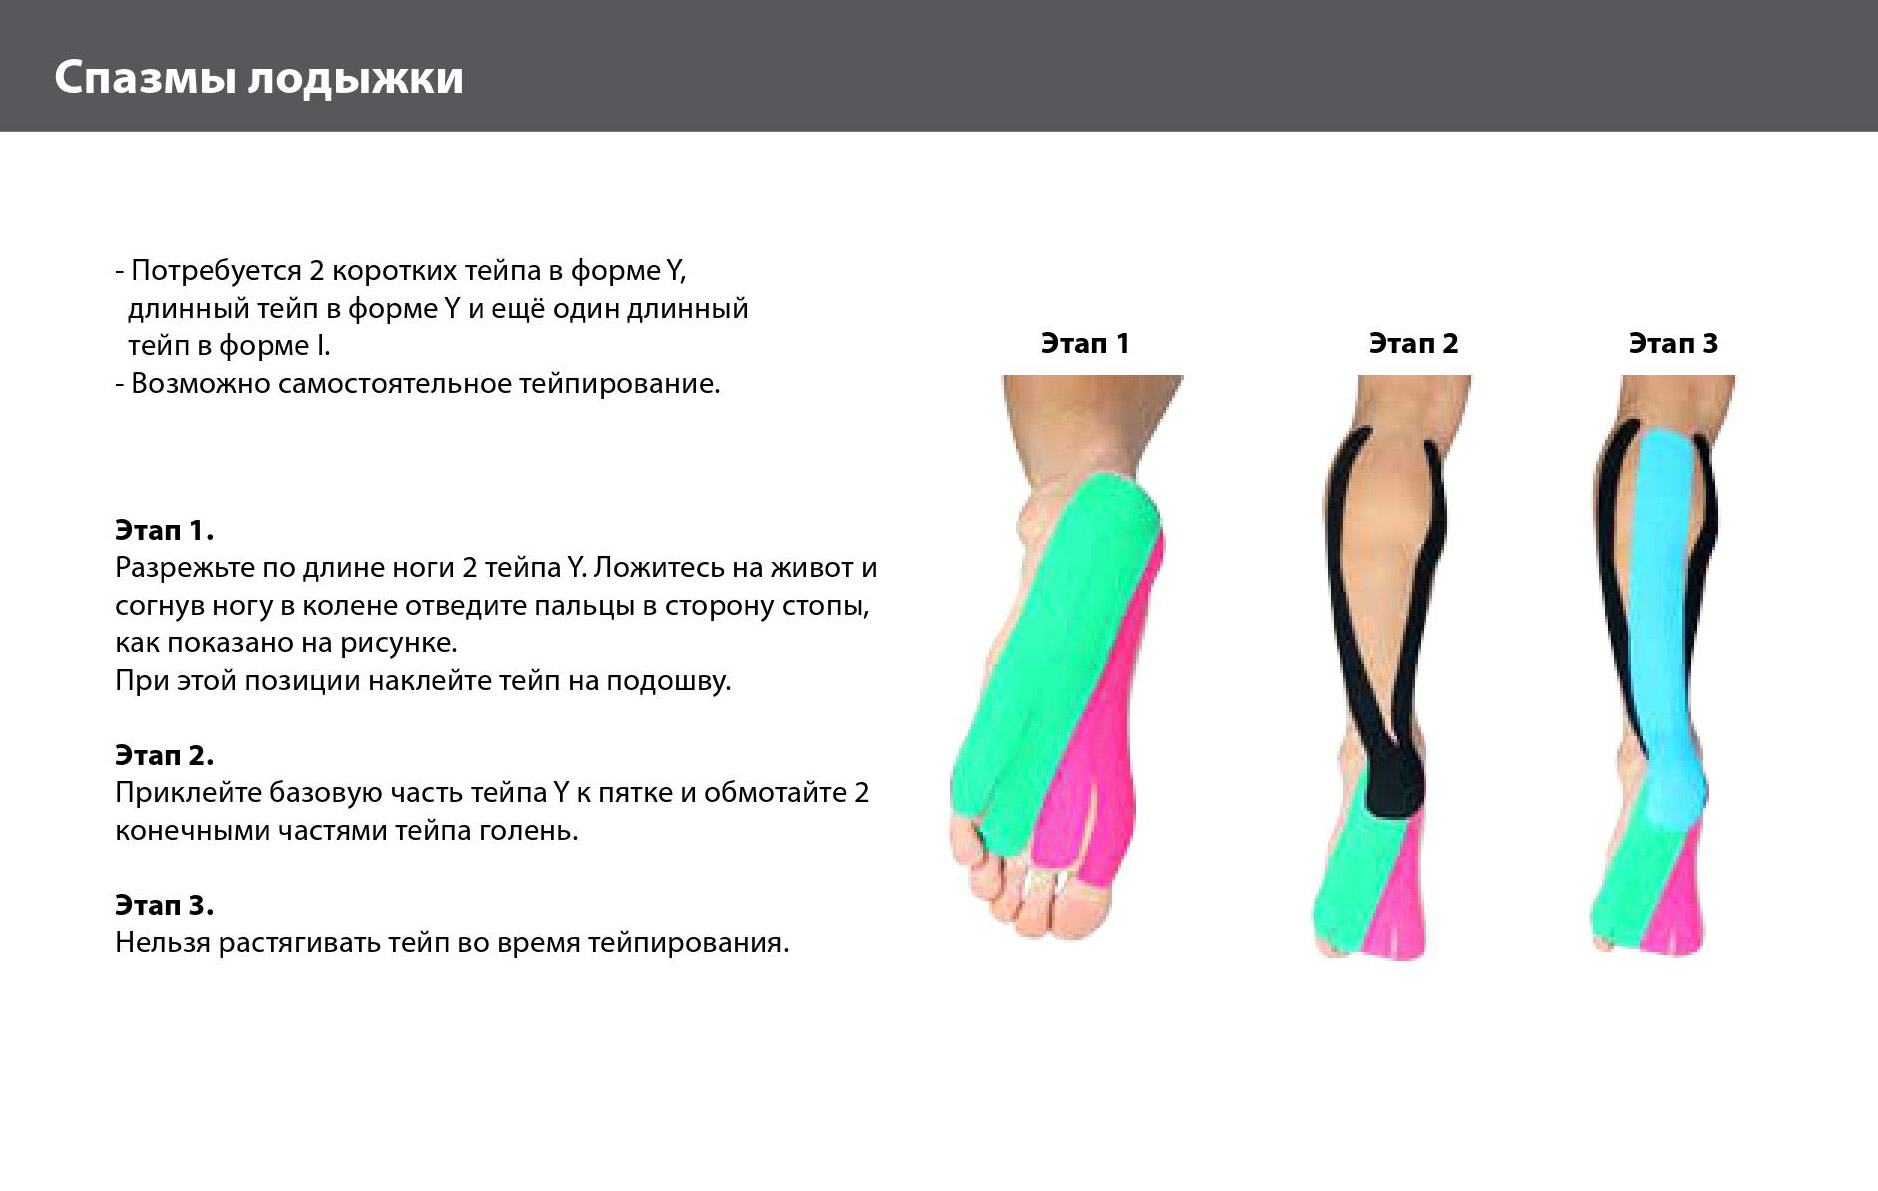 Ночные спазмы в мышцах ног: лечение, профилактика